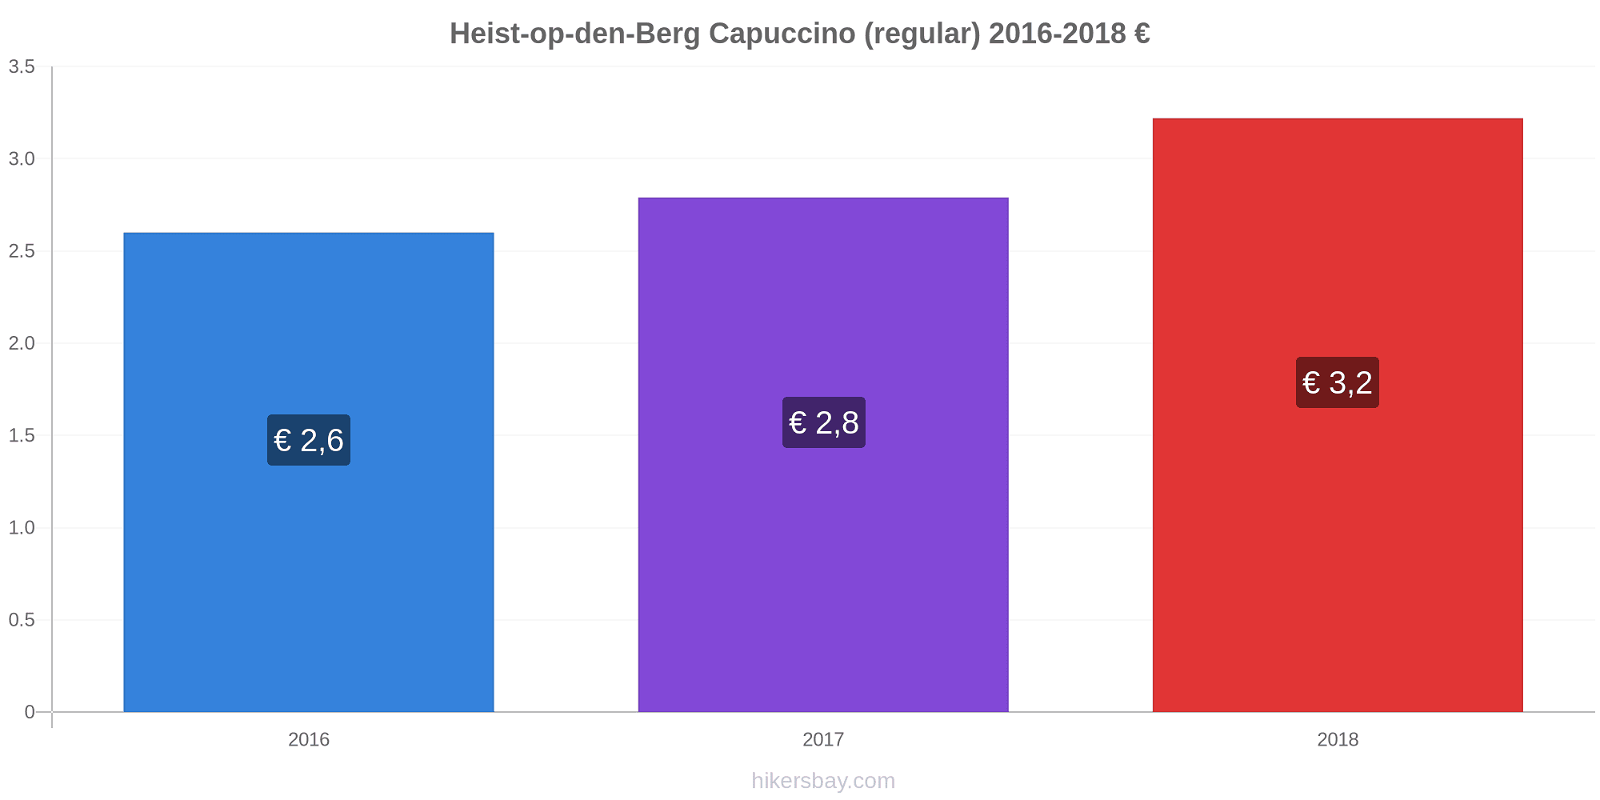 Heist-op-den-Berg variação de preço Capuccino (regular) hikersbay.com